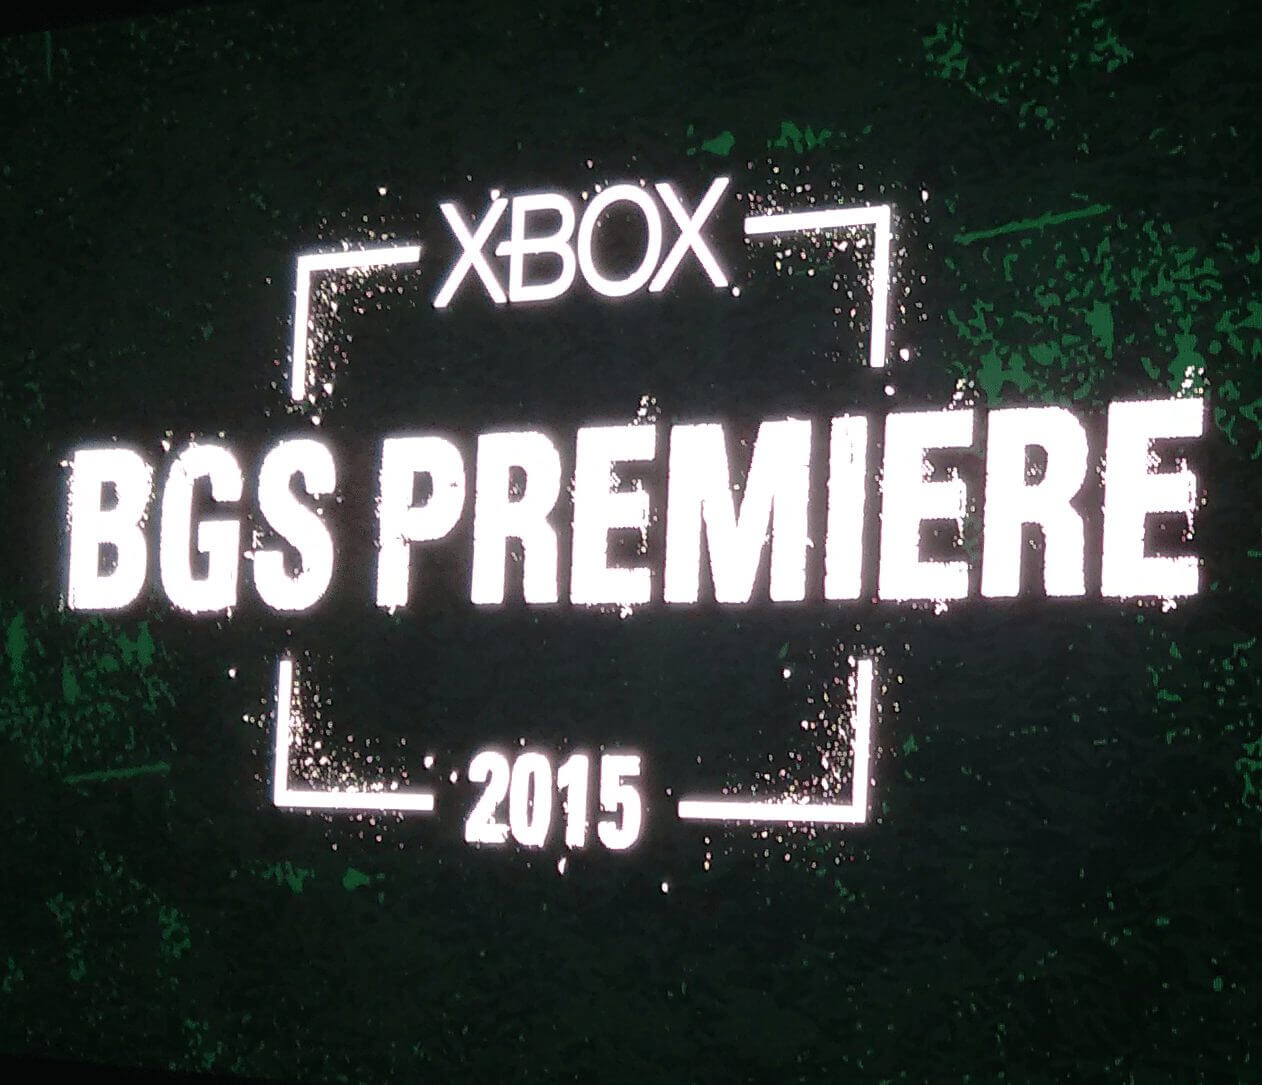 BGS2015 - Microsoft traz novidades do XBox antes da Brasil Game Show